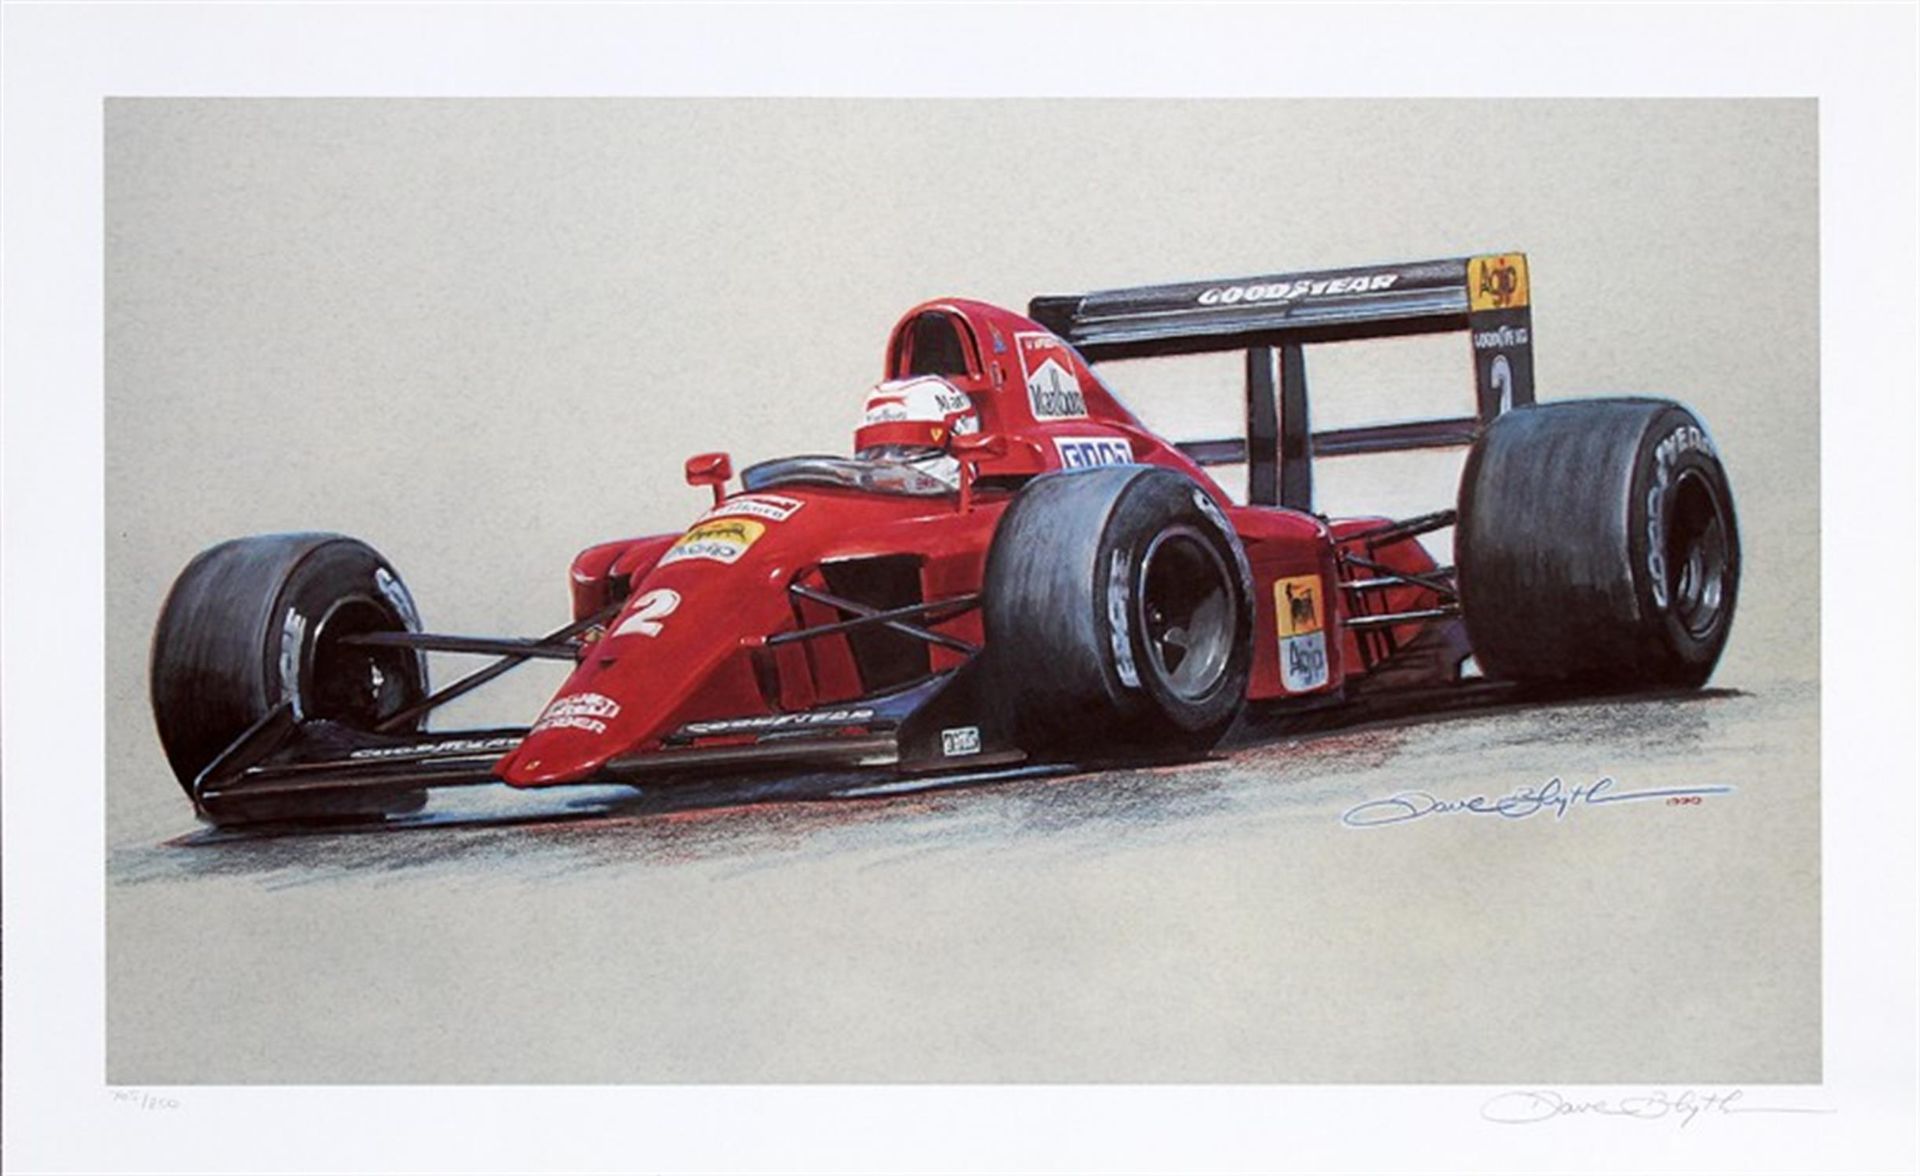 Signed Framed Print of Nigel Mansell in the Ferrari 614B